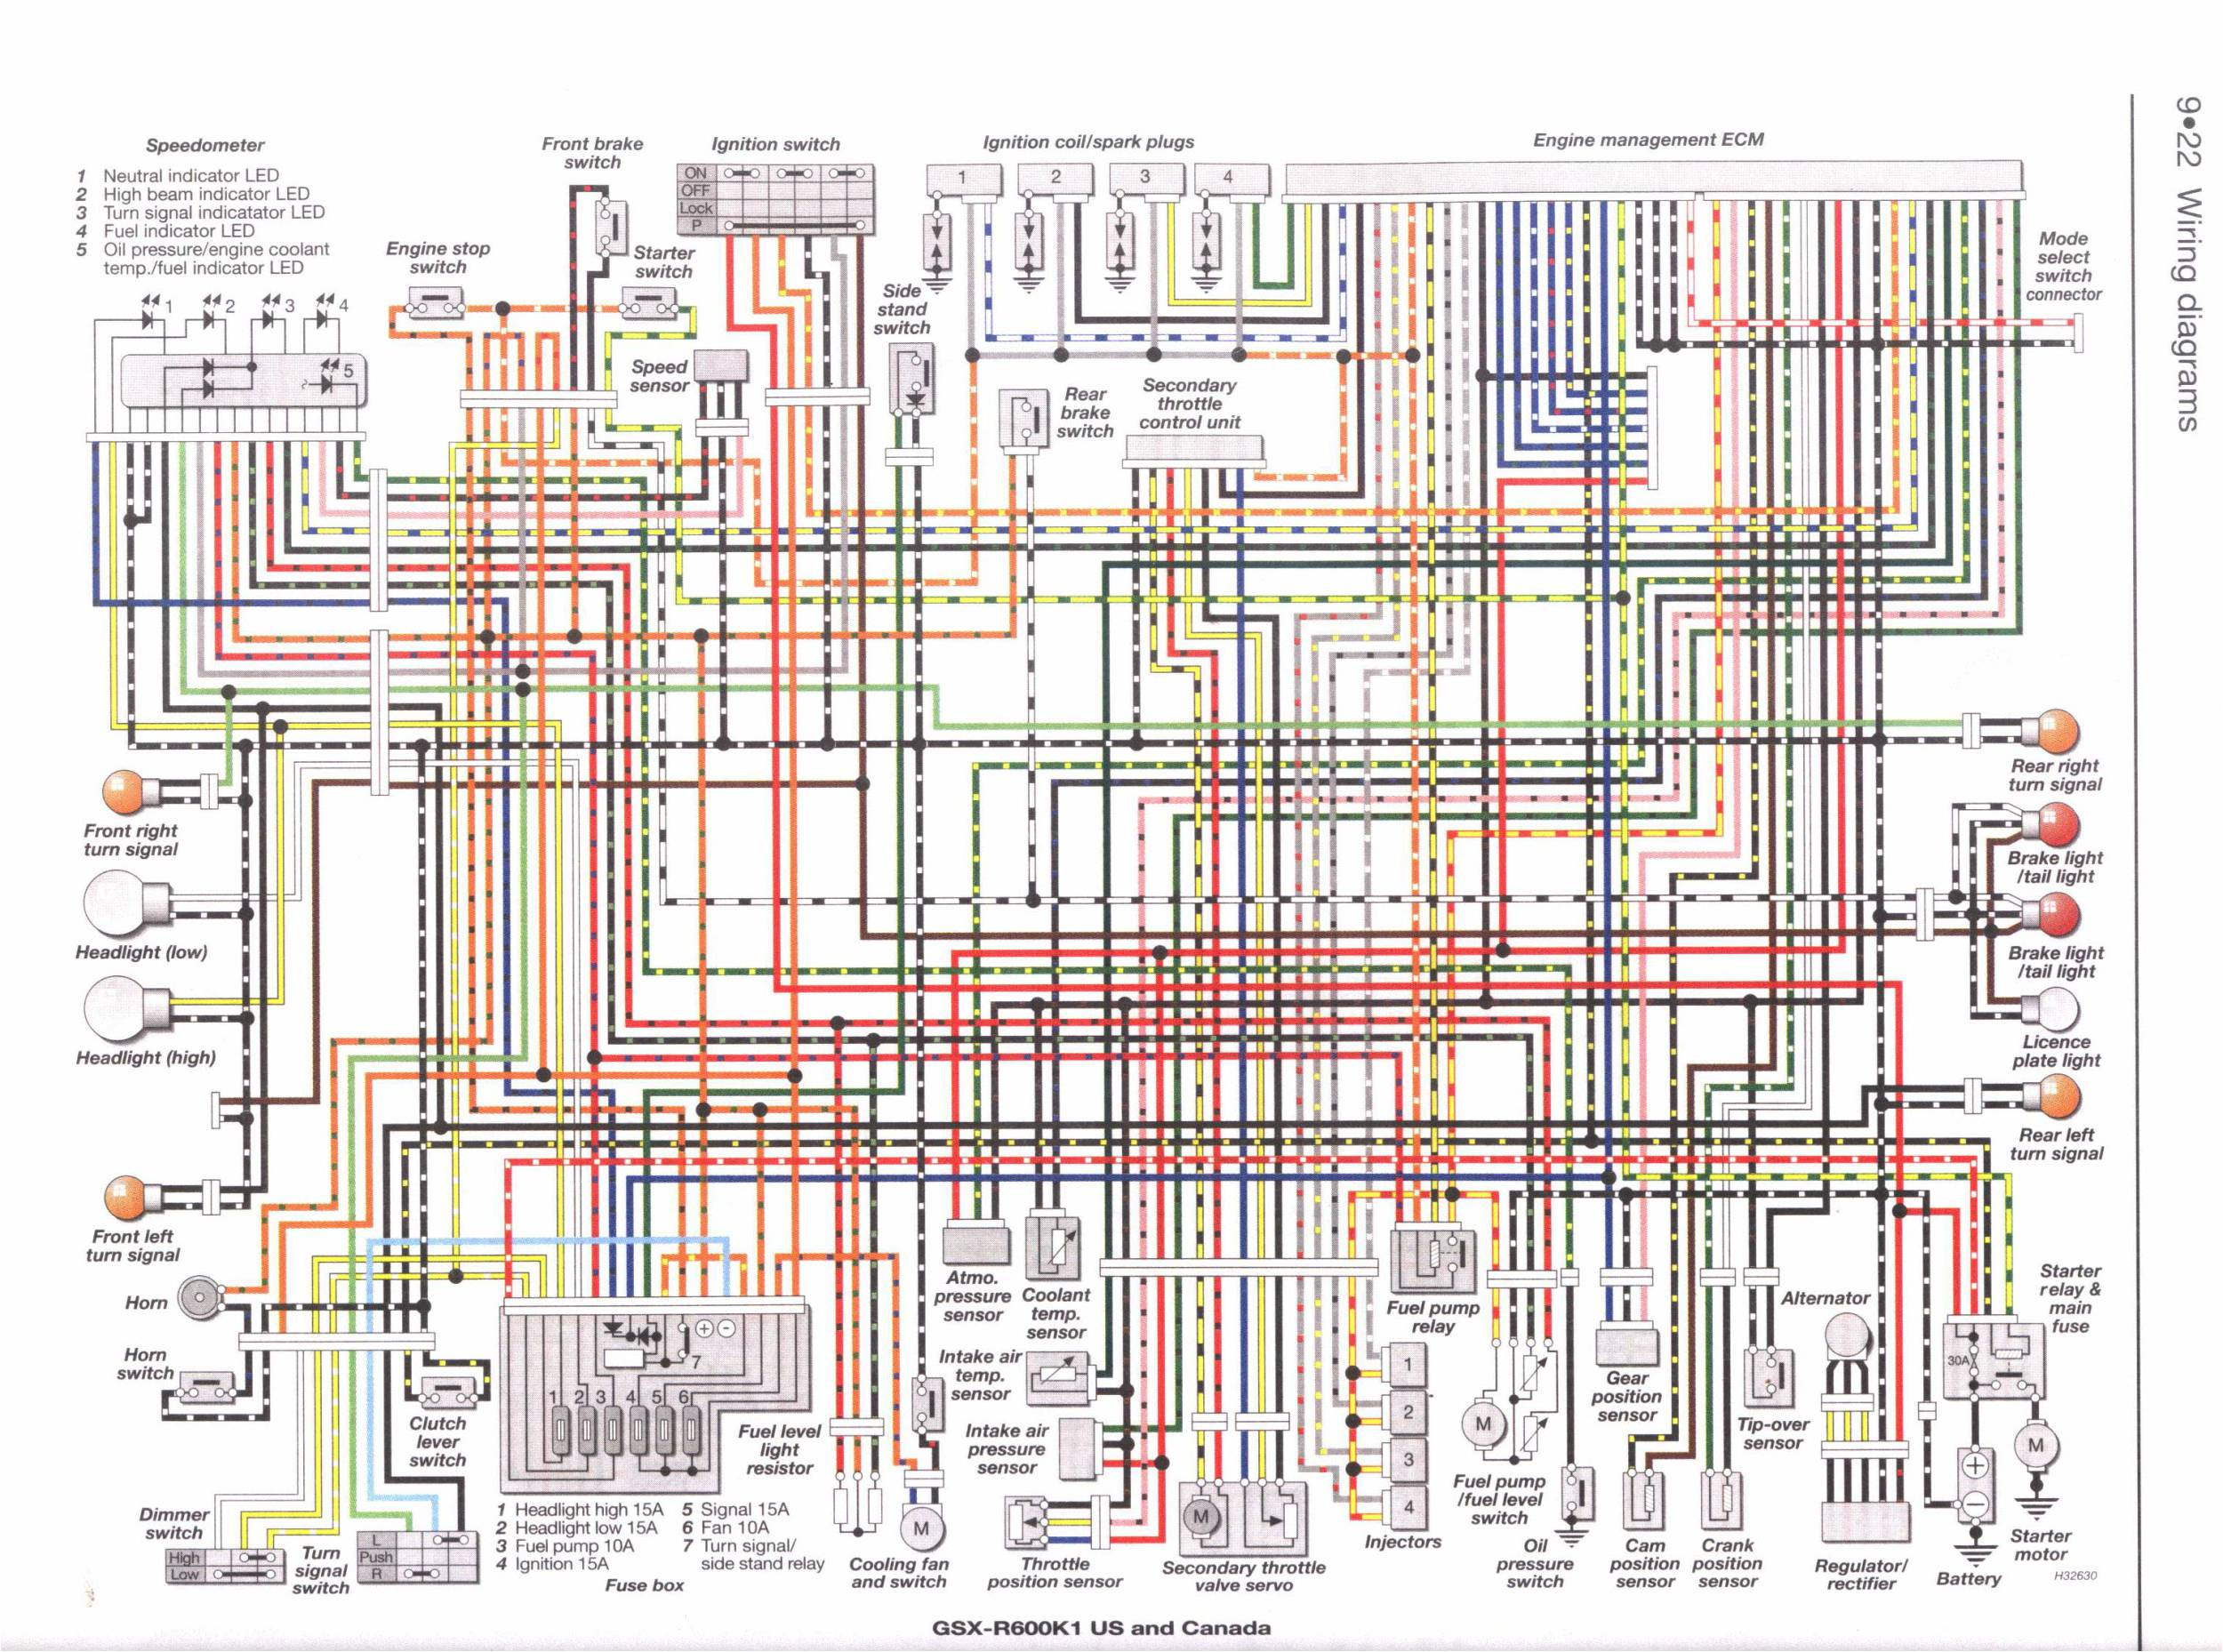 suzuki k15 wiring diagram 24h schemessuzuki gsxr 1100 wiring diagram wiring diagram